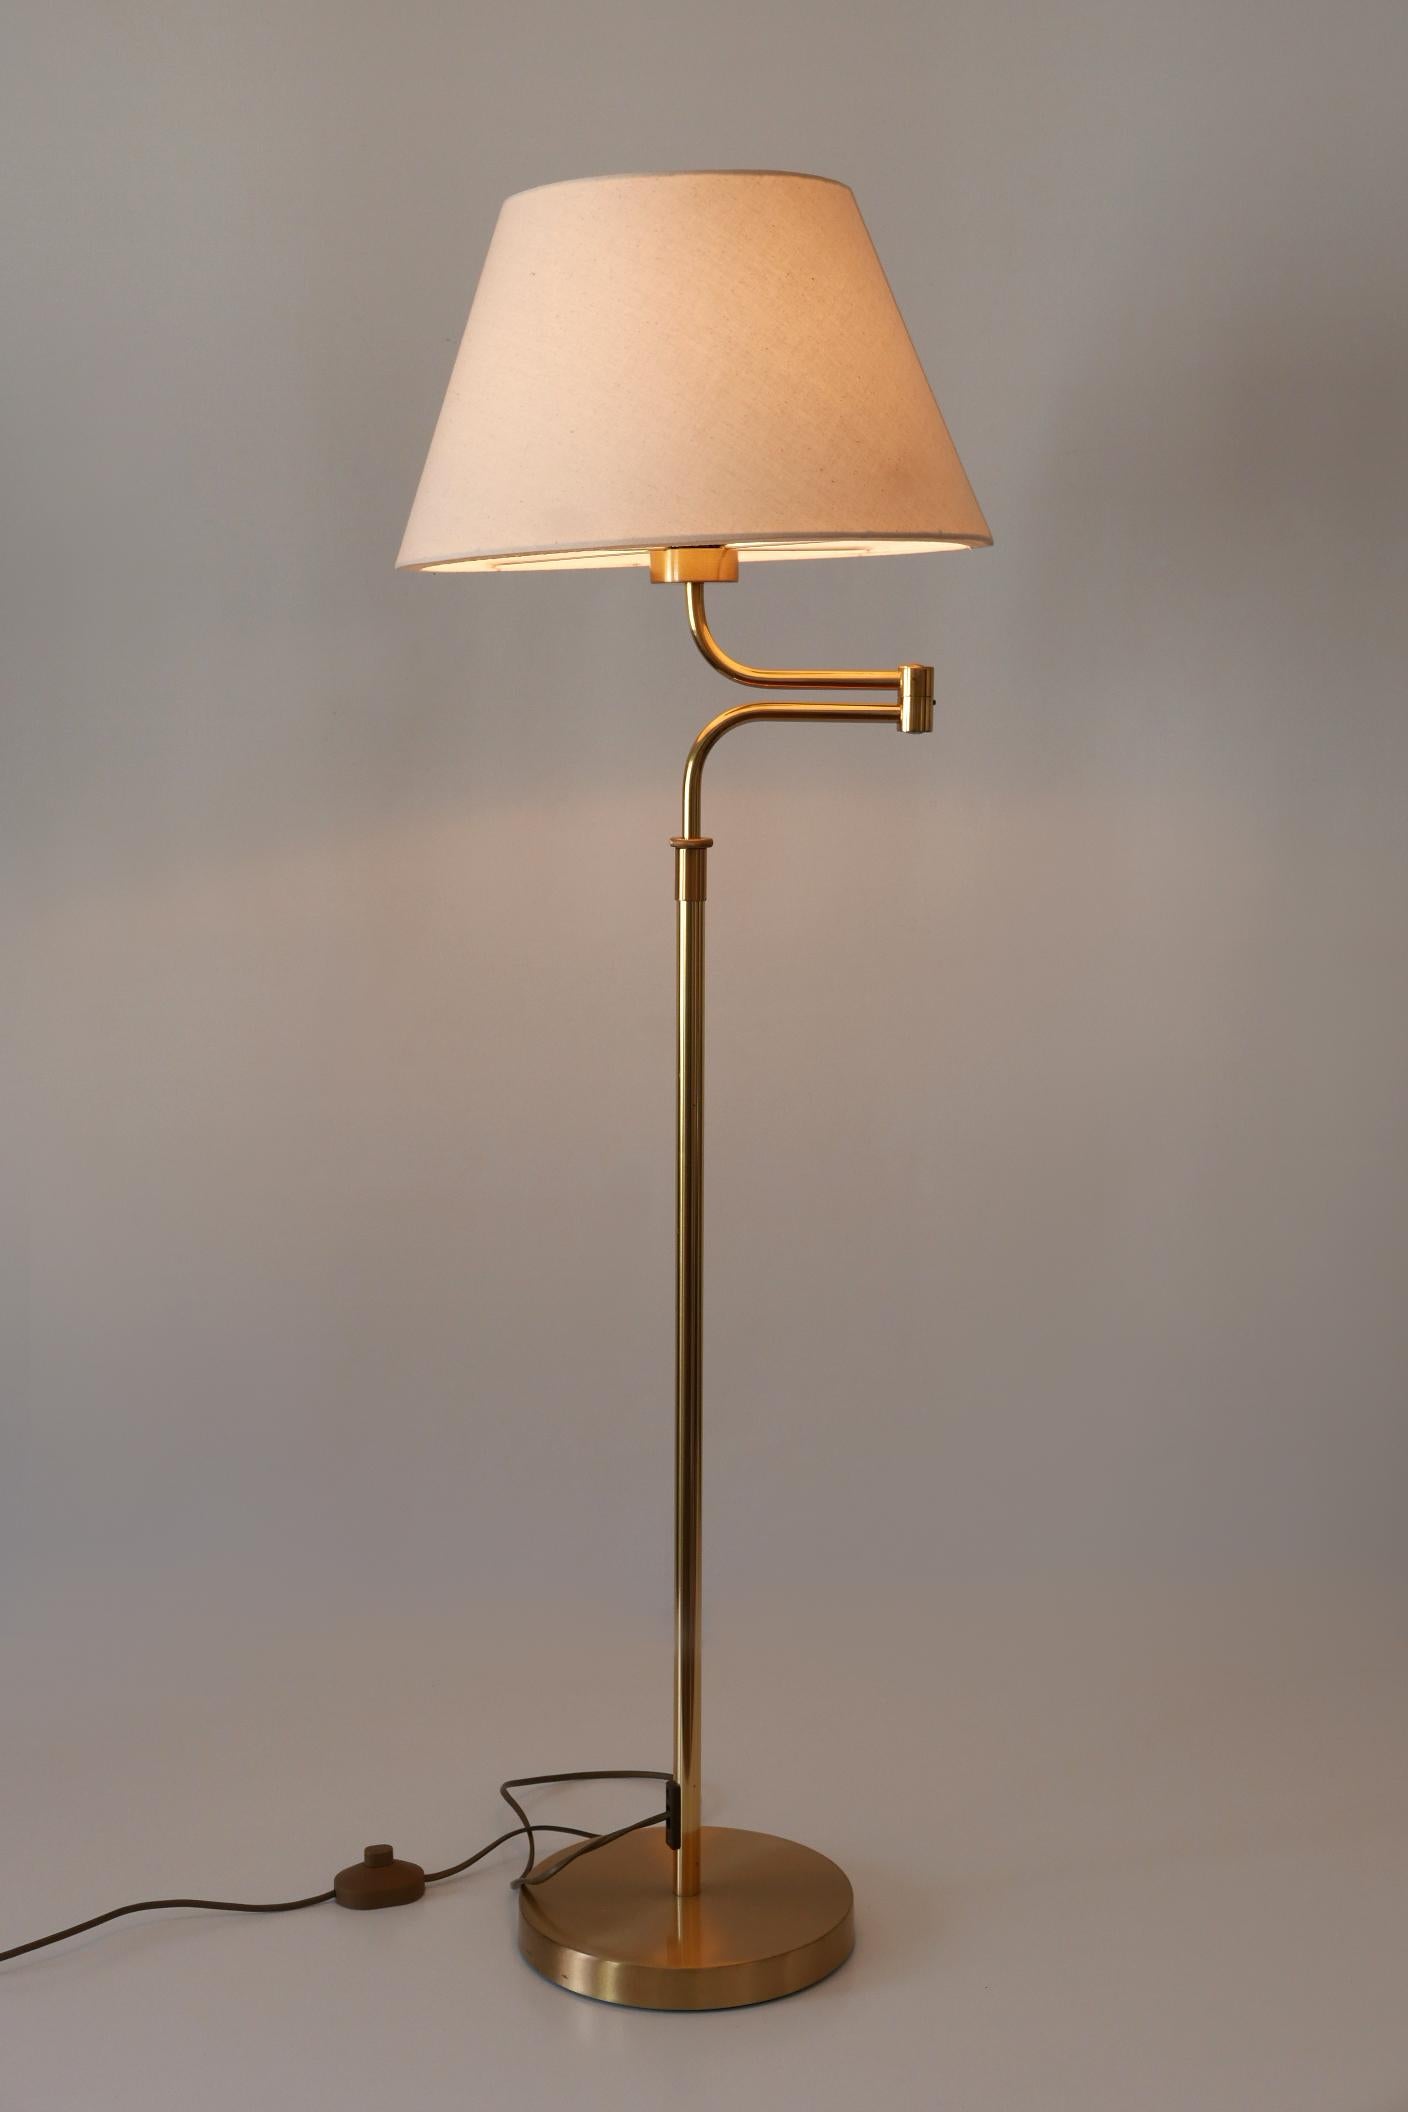 Adjustable Vintage Floor Lamp or Reading Light by Sölken Leuchten Germany 1980s For Sale 11